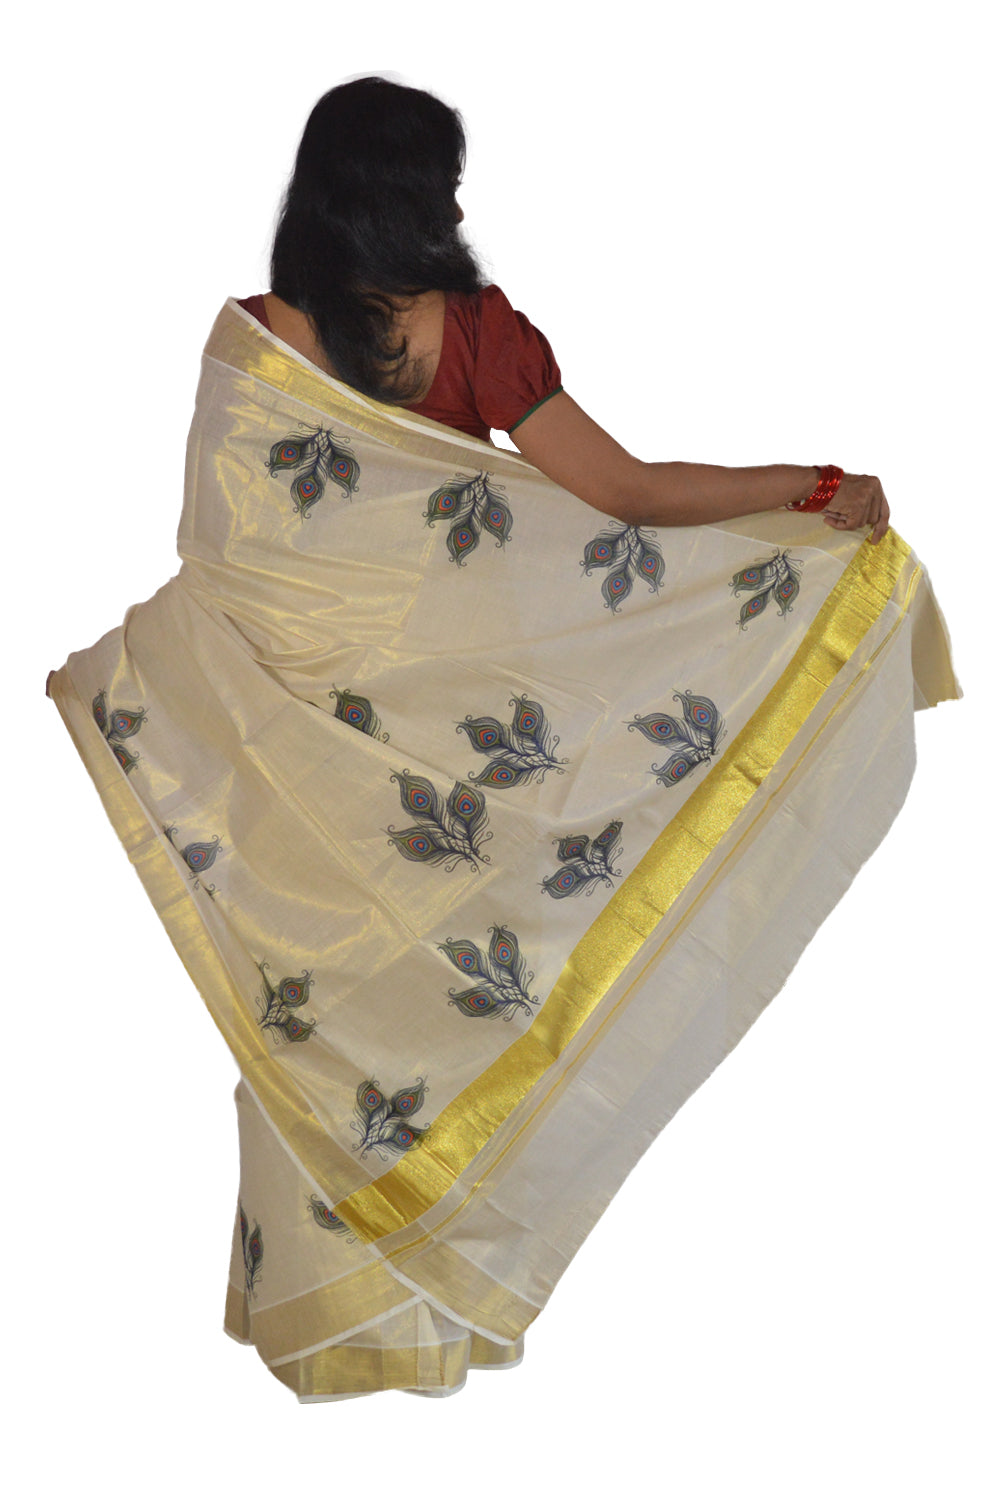 Kerala Tissue Kasavu Saree With Peacock Feather Design